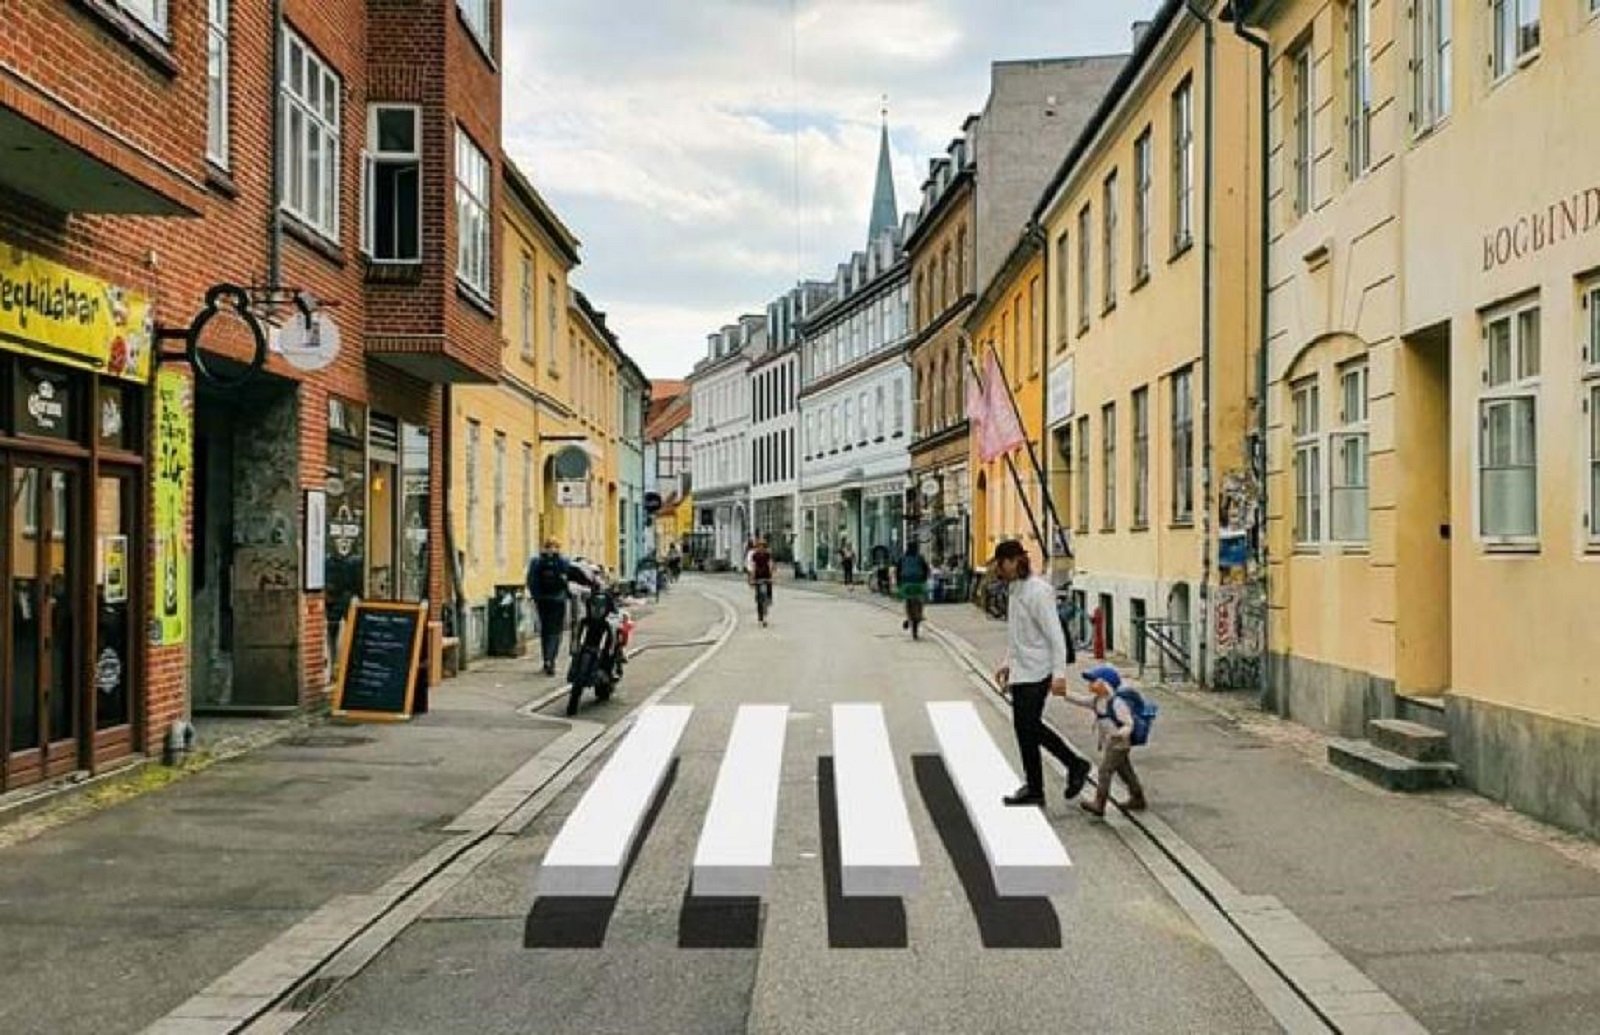 Passos zebra 3D per reduir els accidents, la proposta que triomfa a Dinamarca